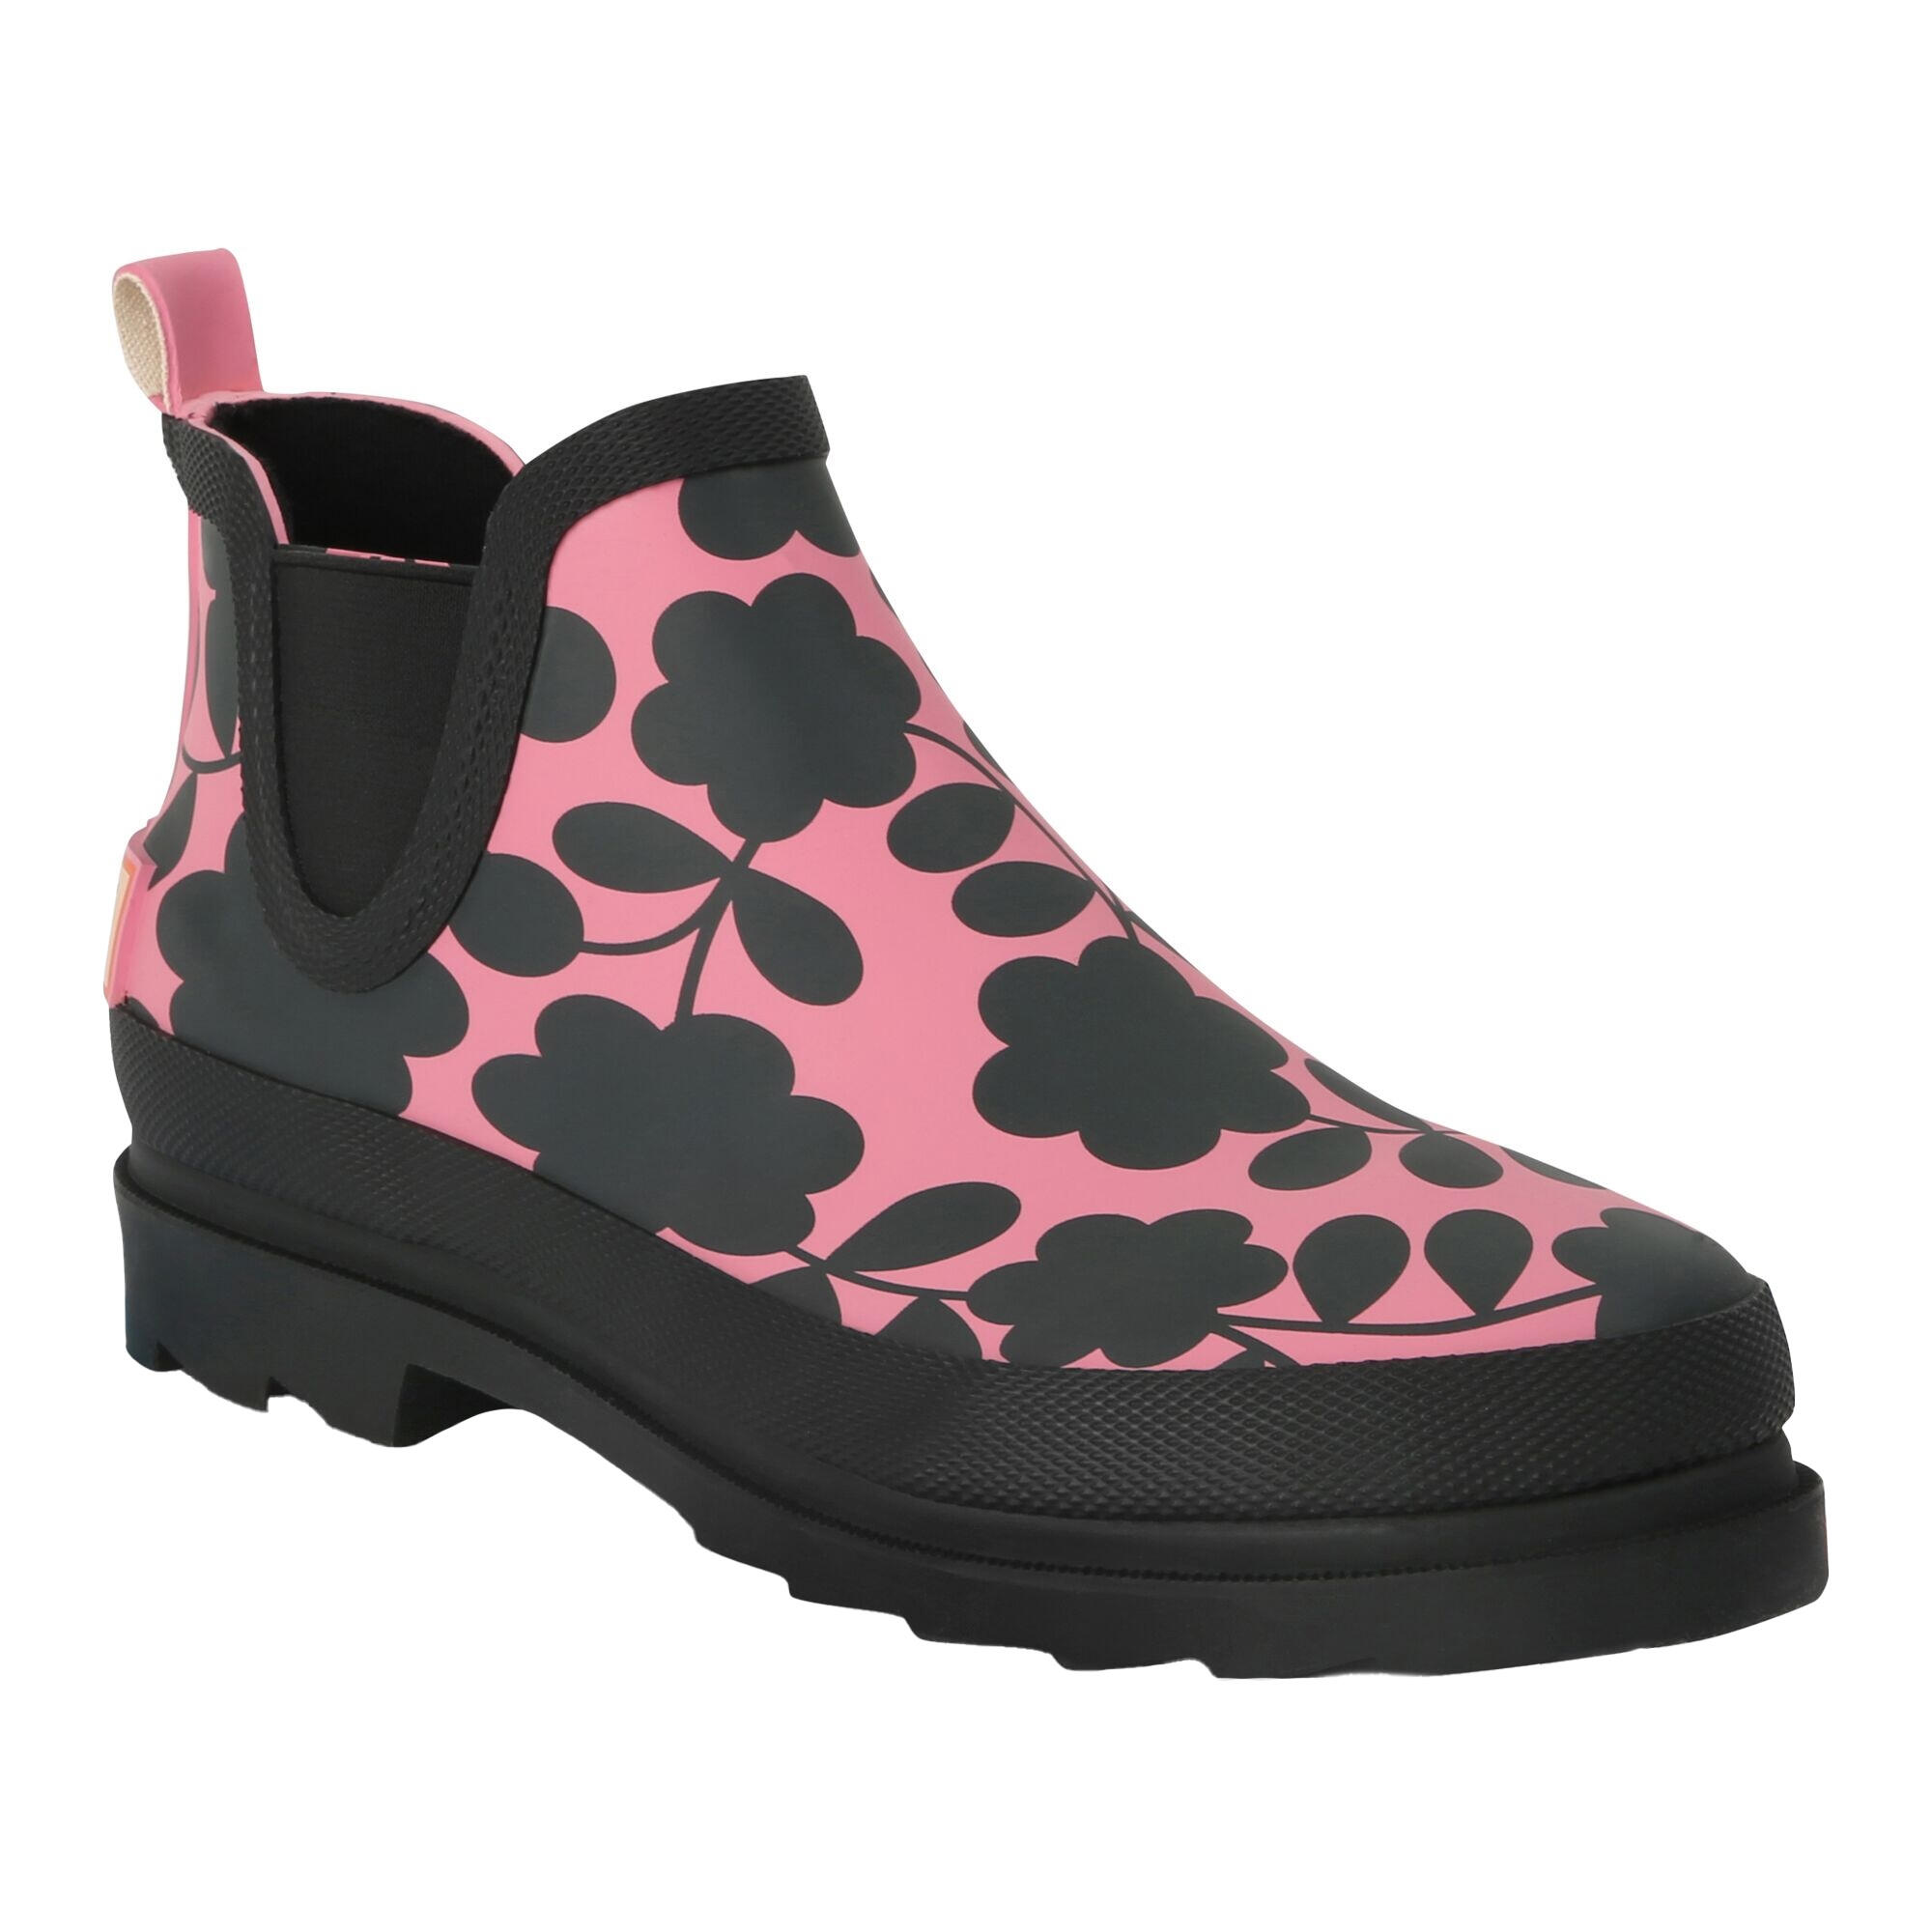 REGATTA Womens/Ladies Orla Kiely Floral Mid Cut Wellington Boots (Pink)